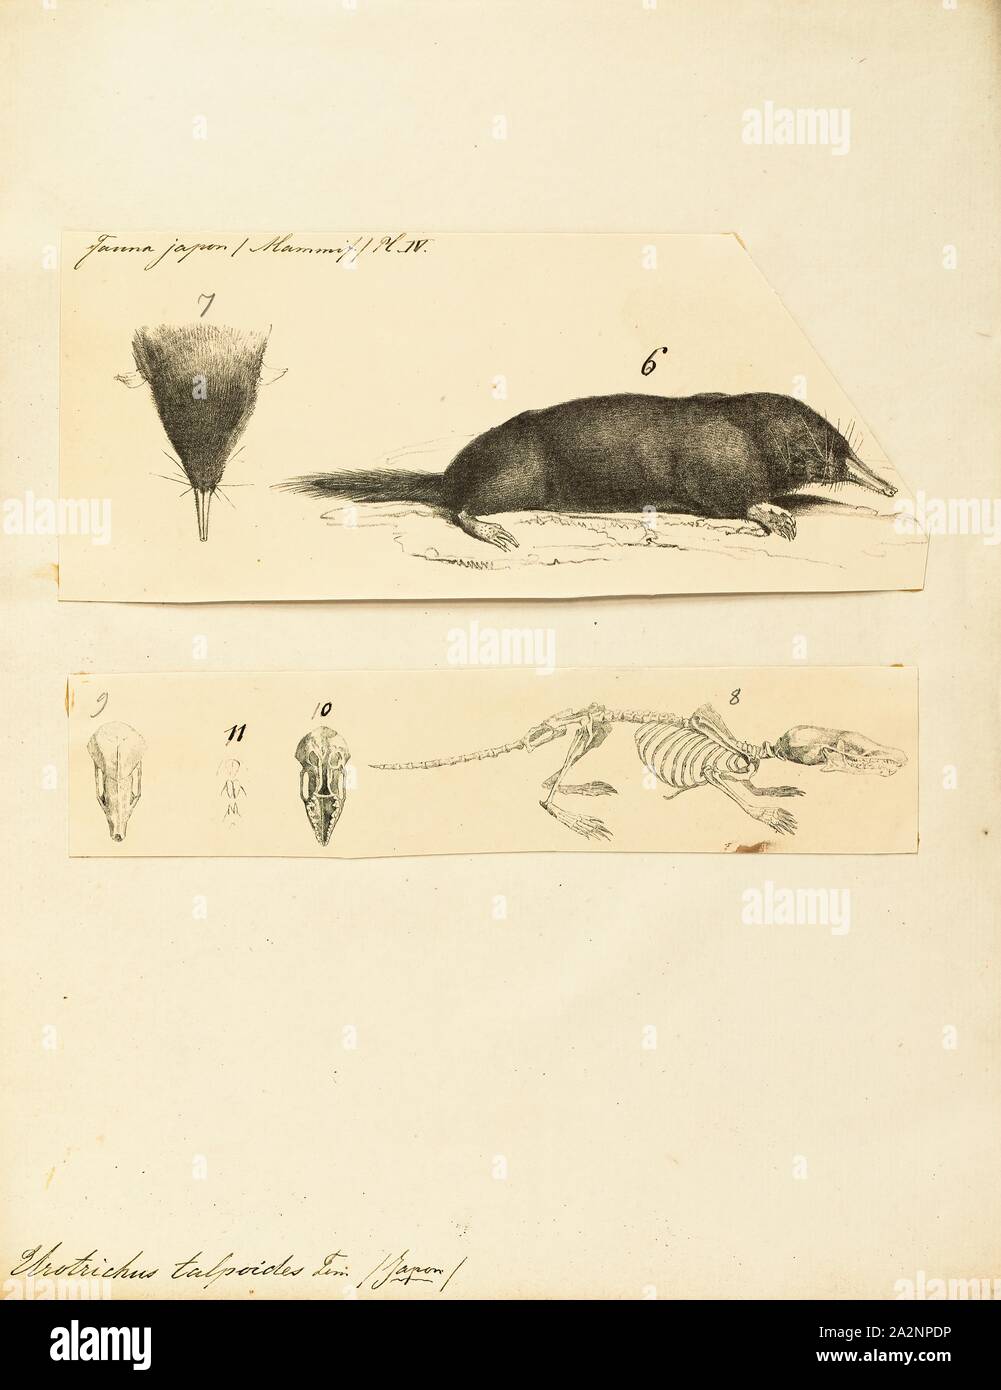 Urotrichus talpoides, Imprimer, la musaraigne japonais mole (ヒミズ ou himizu)  (Urotrichus talpoides) est une espèce de passereau de la famille Talpidae.  C'est endémique au Japon et est trouvé sur Honshu, Shikoku, Kyushu,